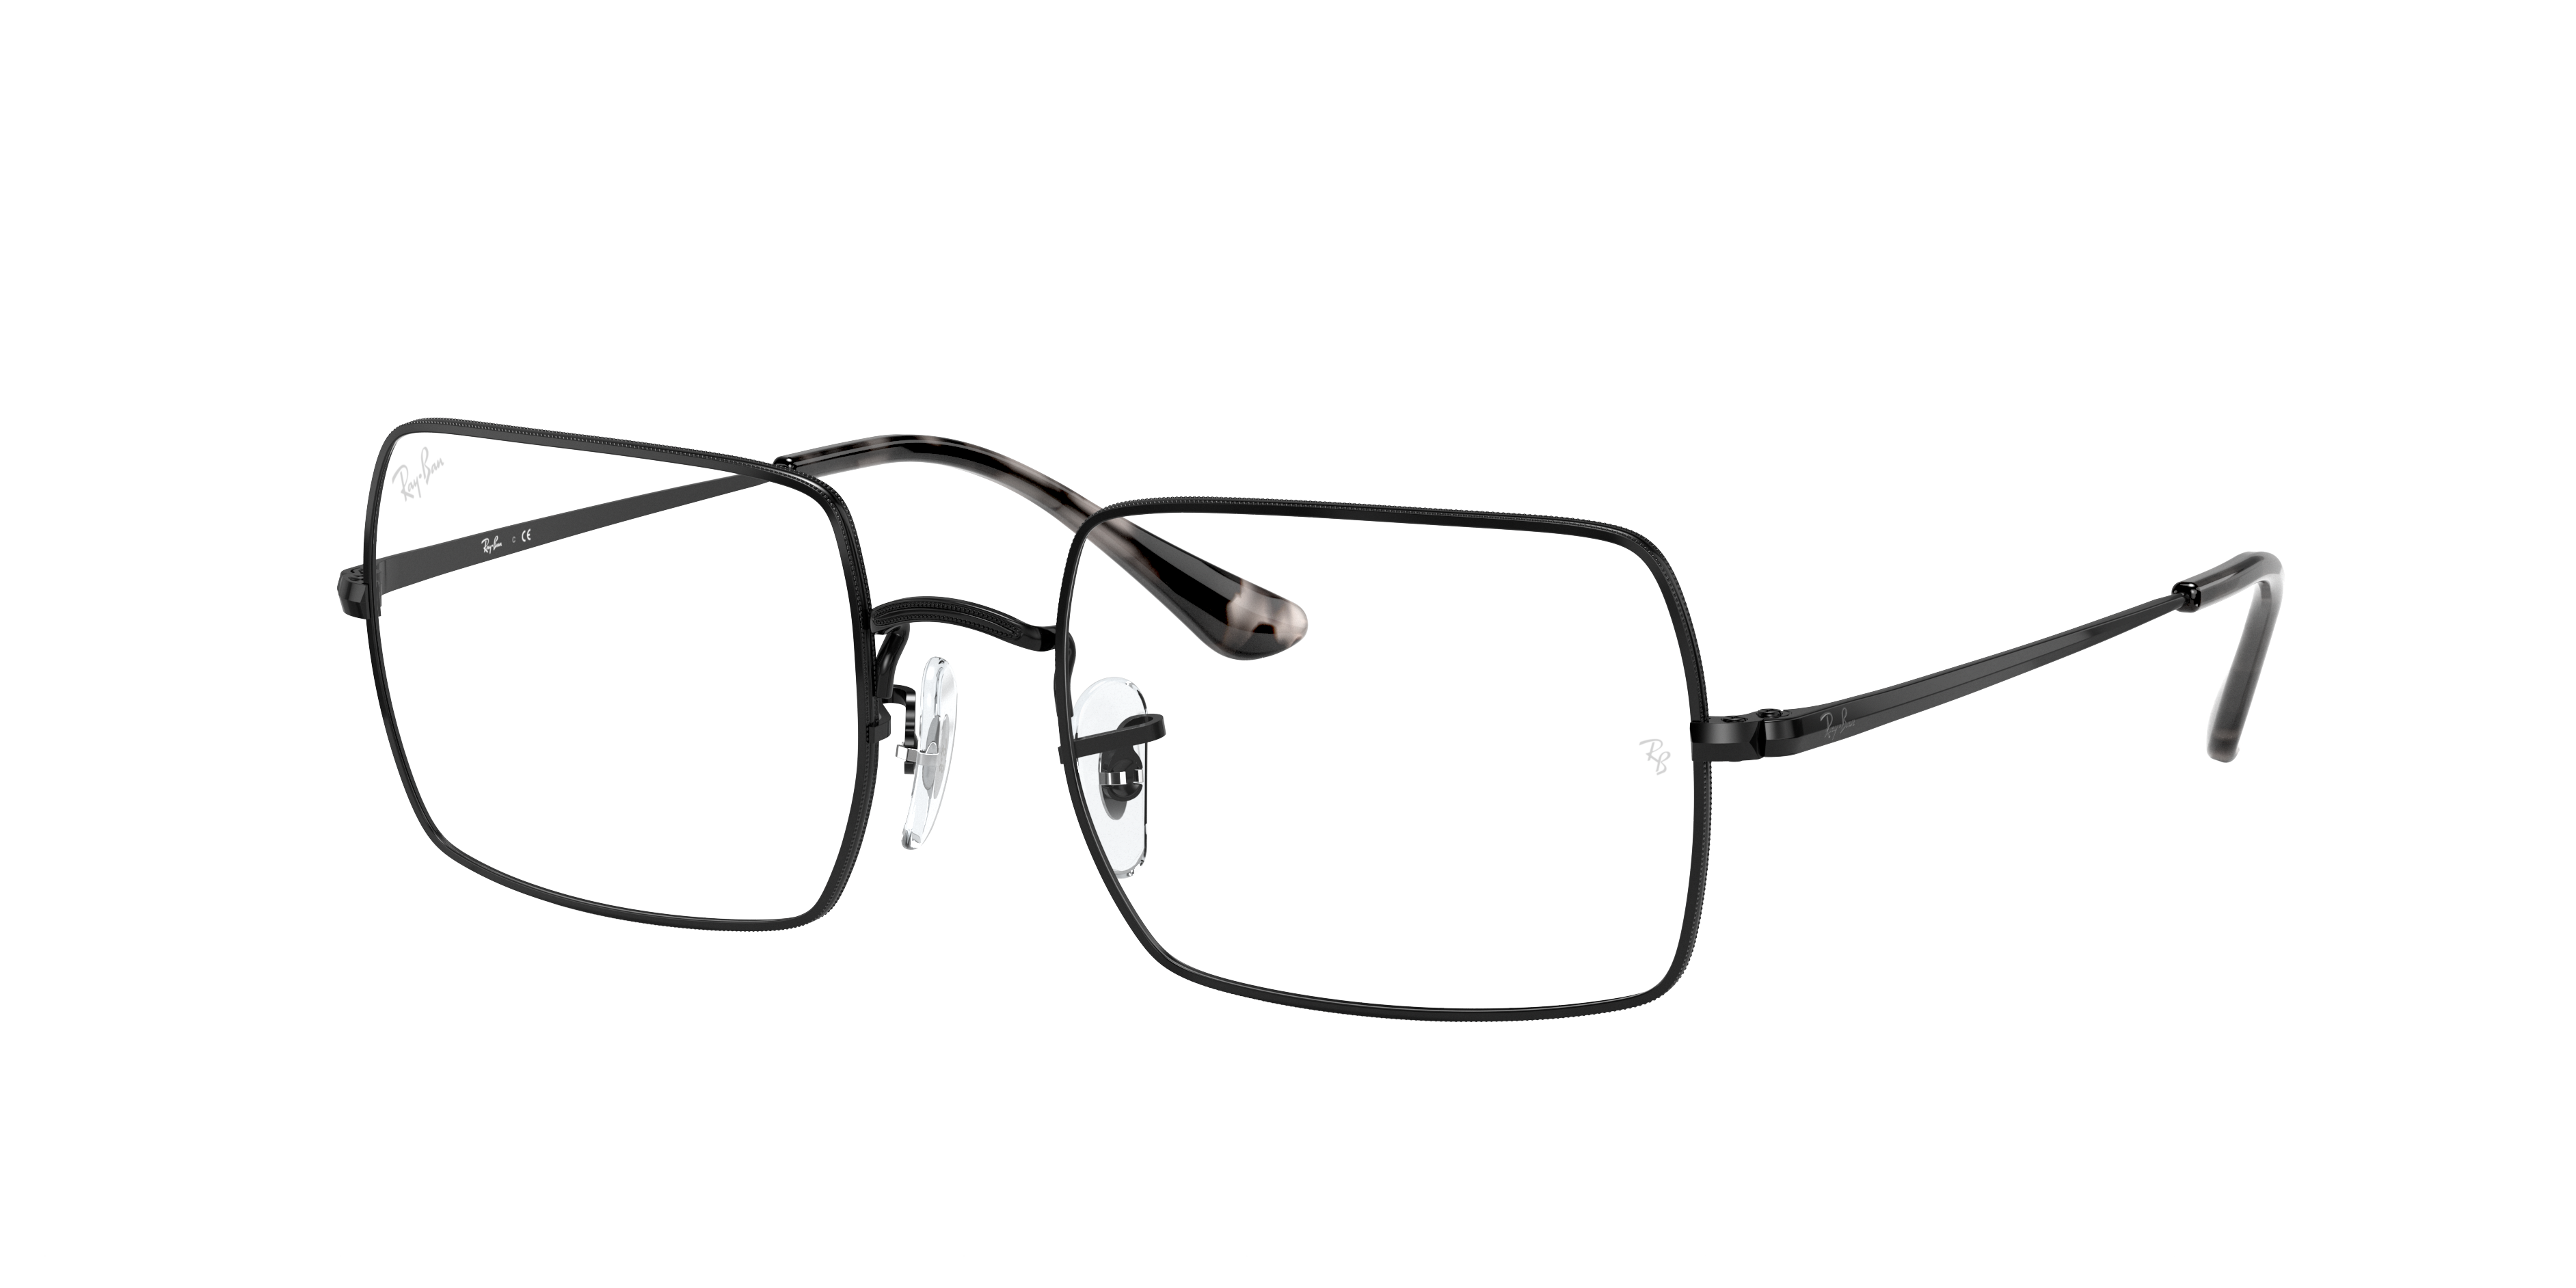 Rb1969v Rectangle Eyeglasses With Black Frame Rb1969v Ray Ban® 